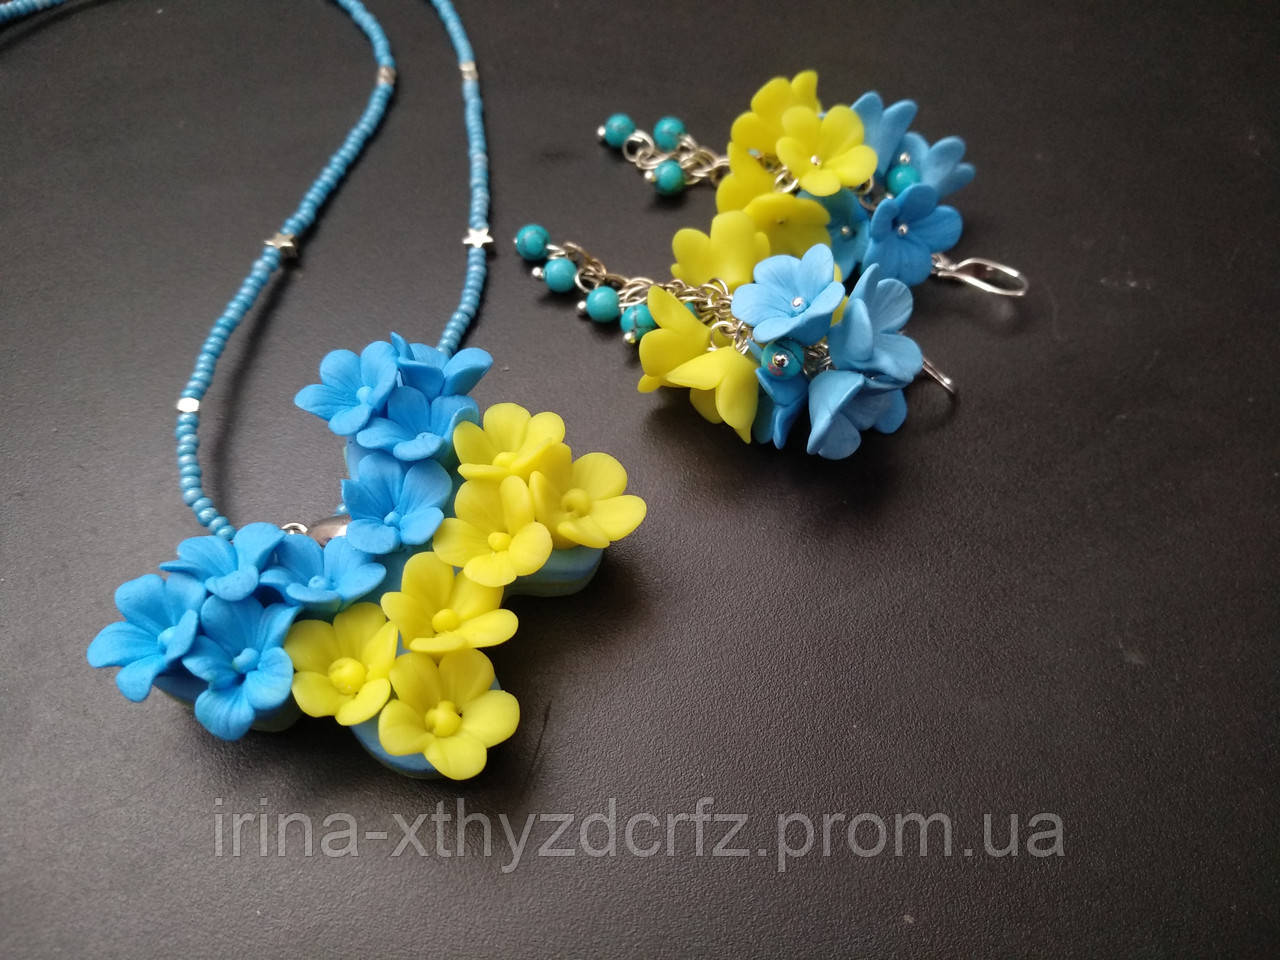 Жовто-блакитний кулон і сережки в українському стилі з жовто-блакитними квітами з полімерної глини